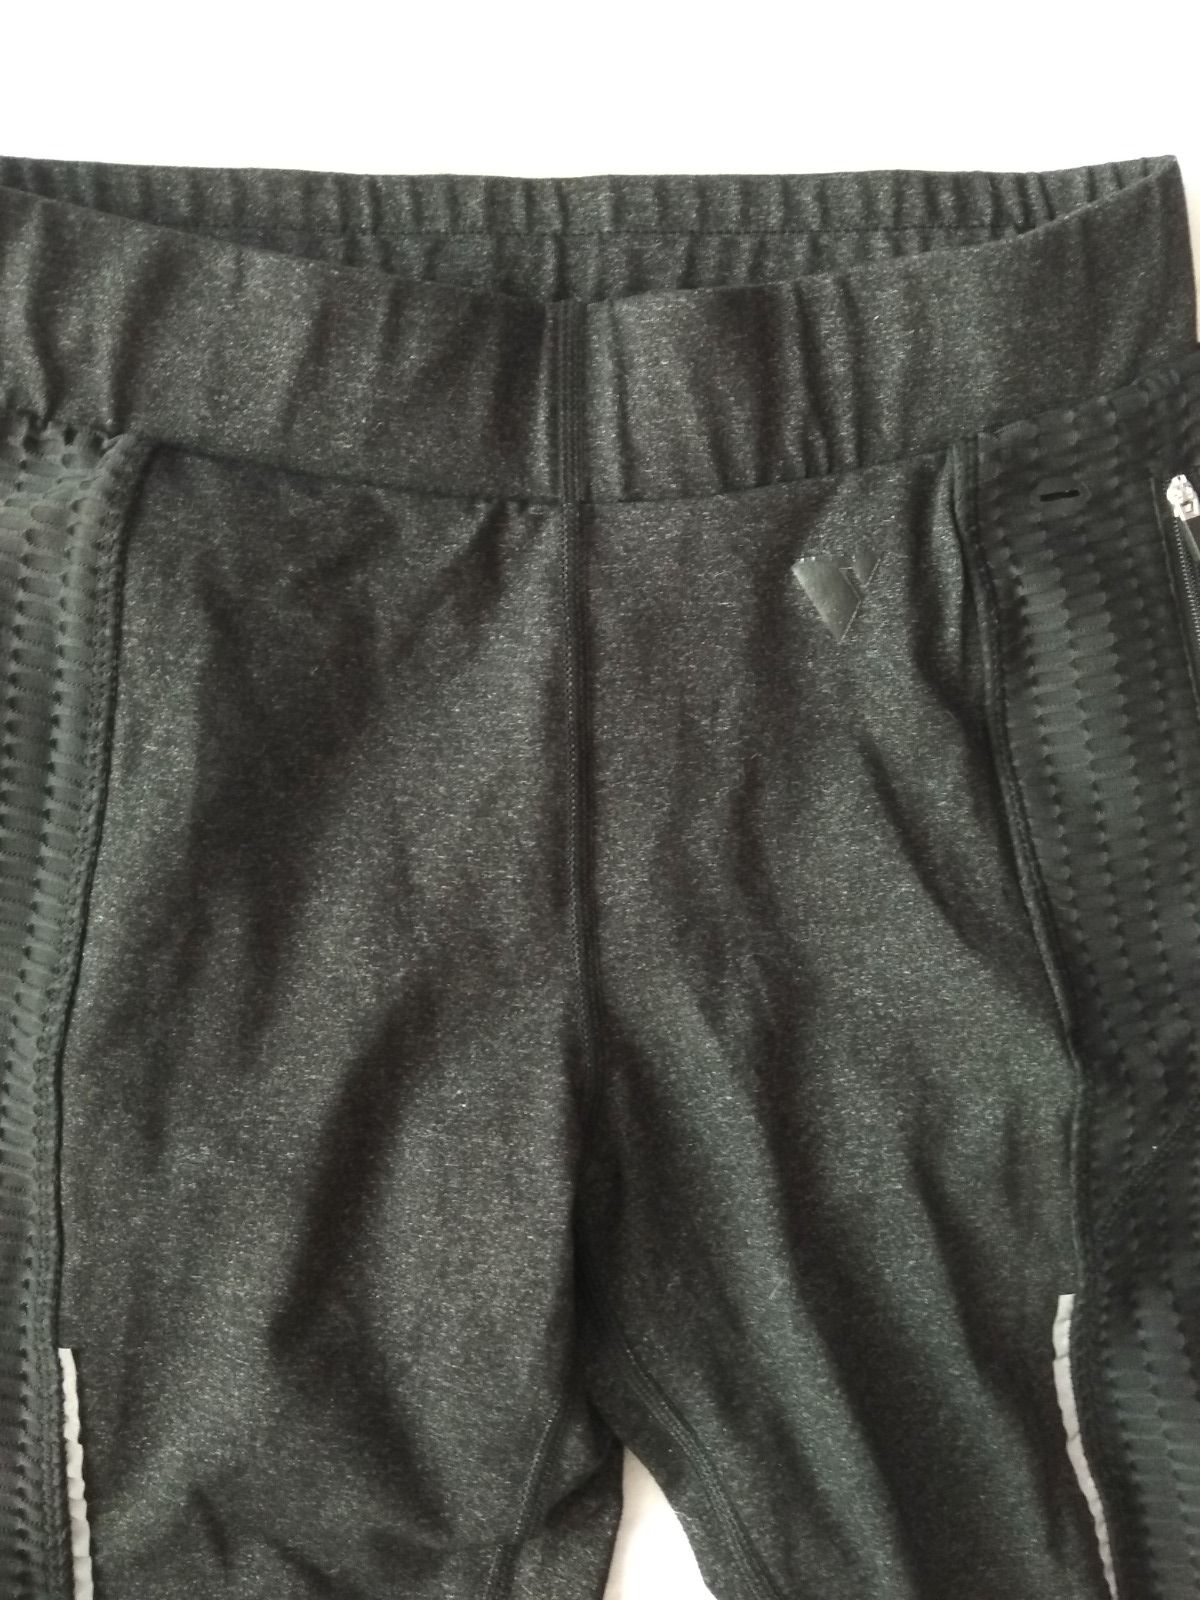 Фирменные женские штаны SWIX (лыжи, бег). Размер 42-46. Беговые термо лосины.